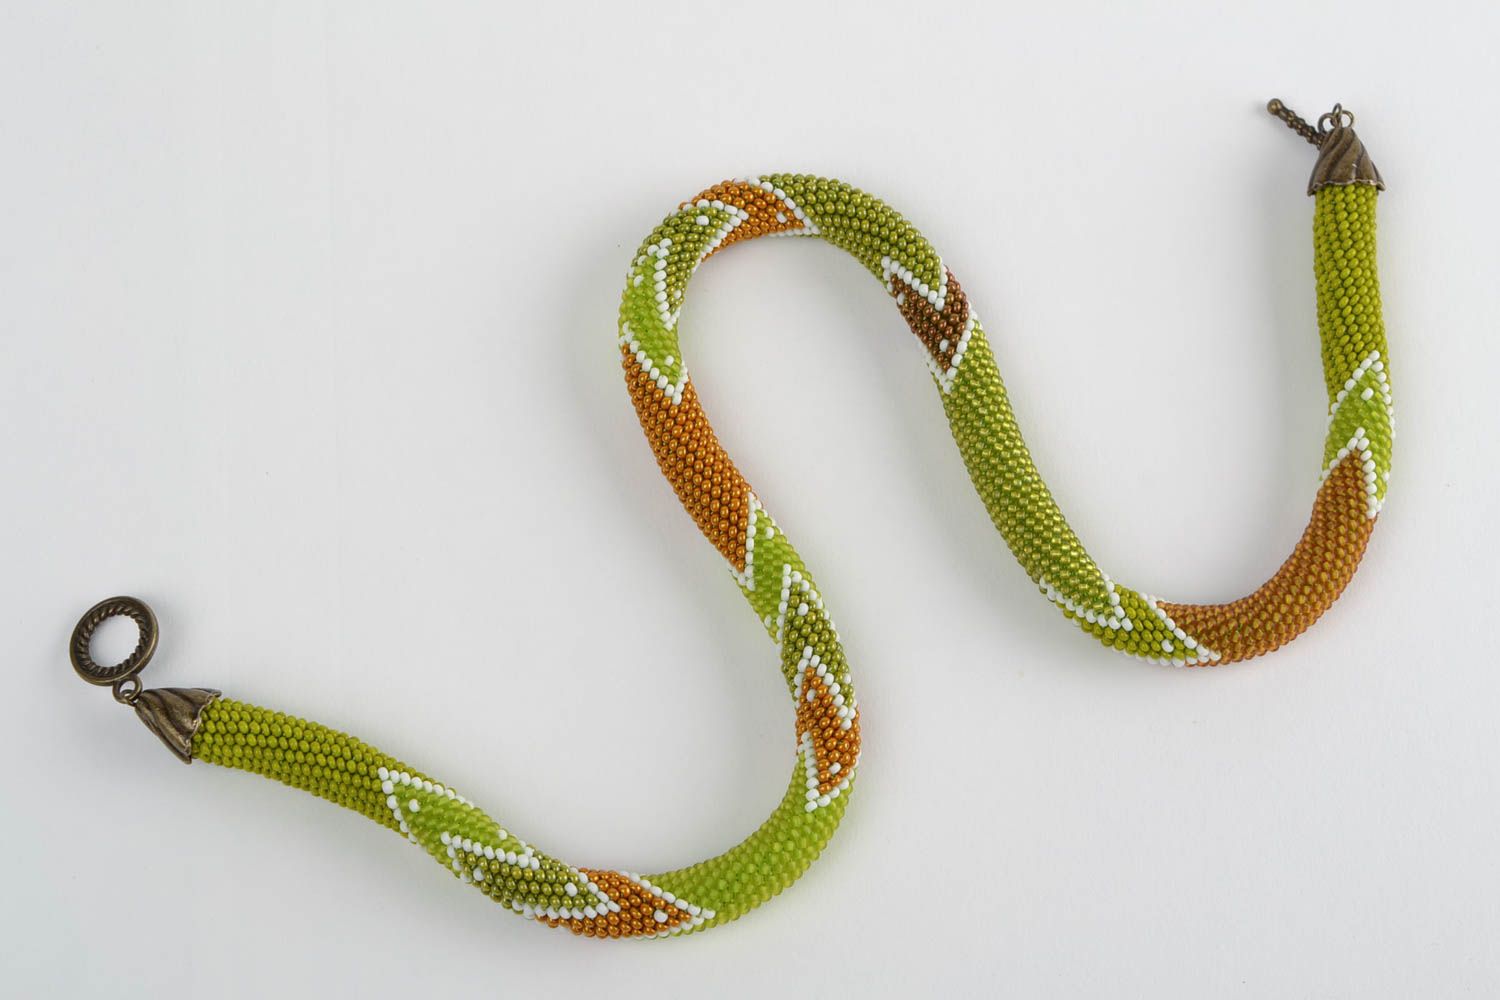 Жгут из бисера зеленый вязаный стильный с зигзагом красивый ручной работы фото 2